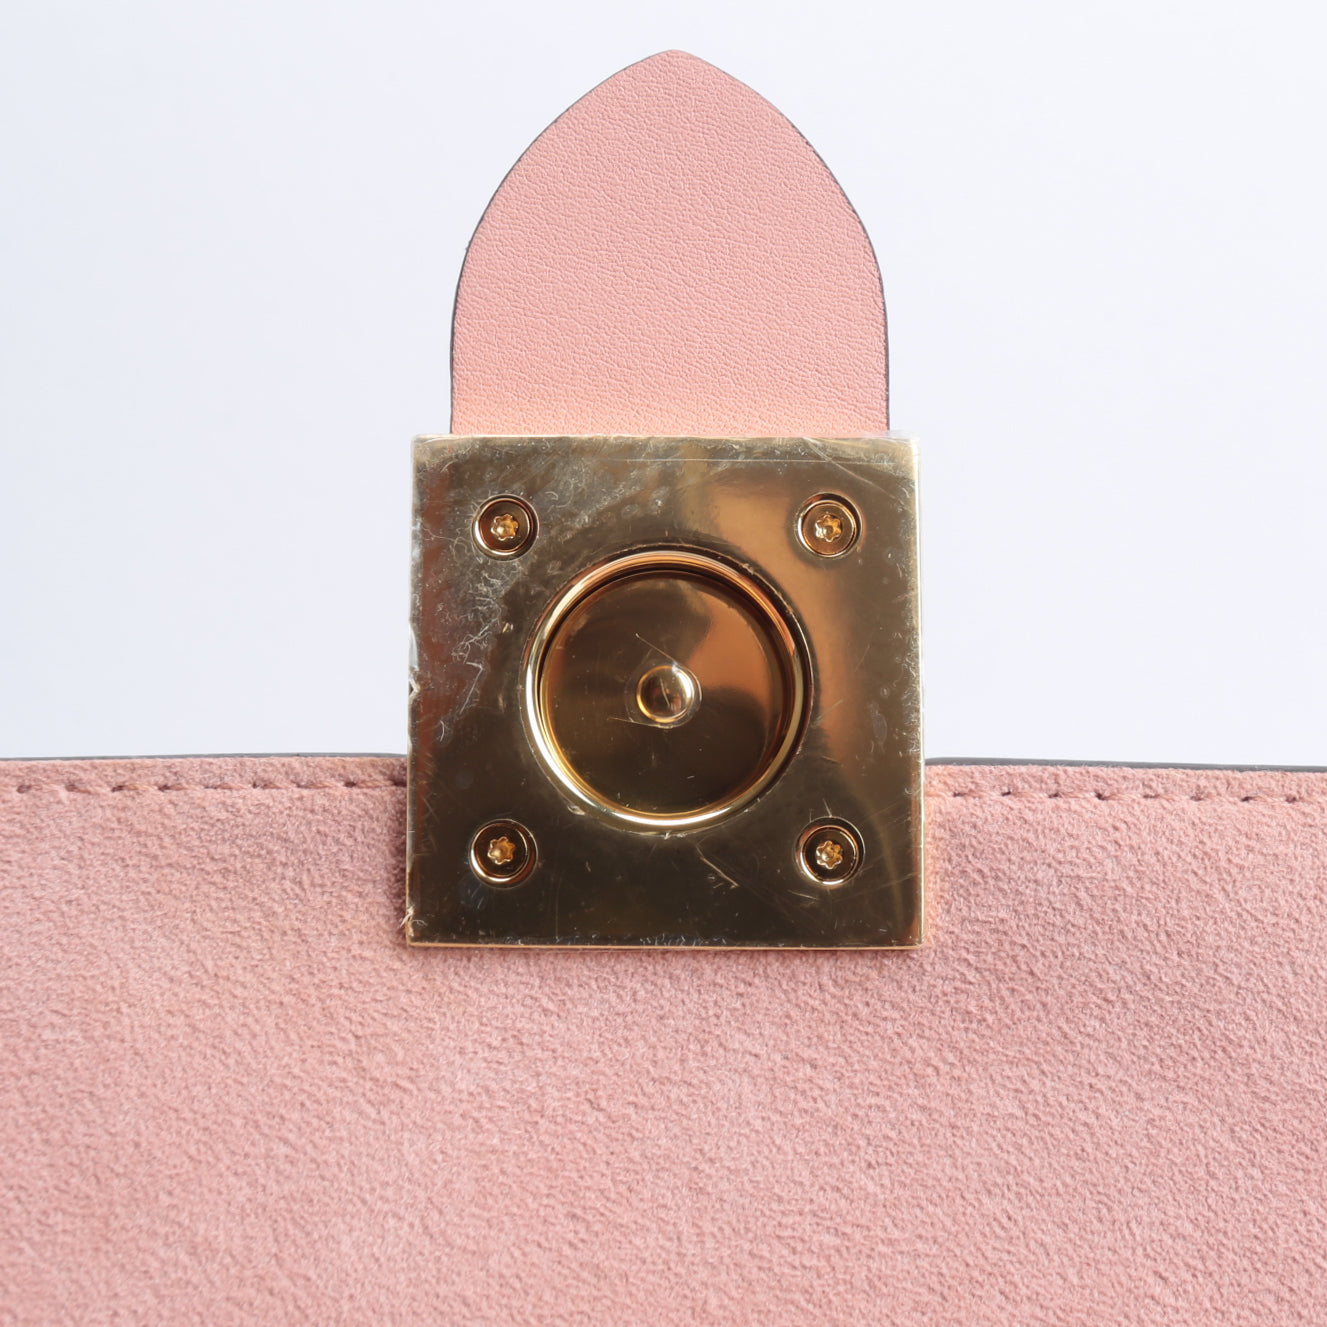 Louis Vuitton LOCKY Bb Monogram W/Pink